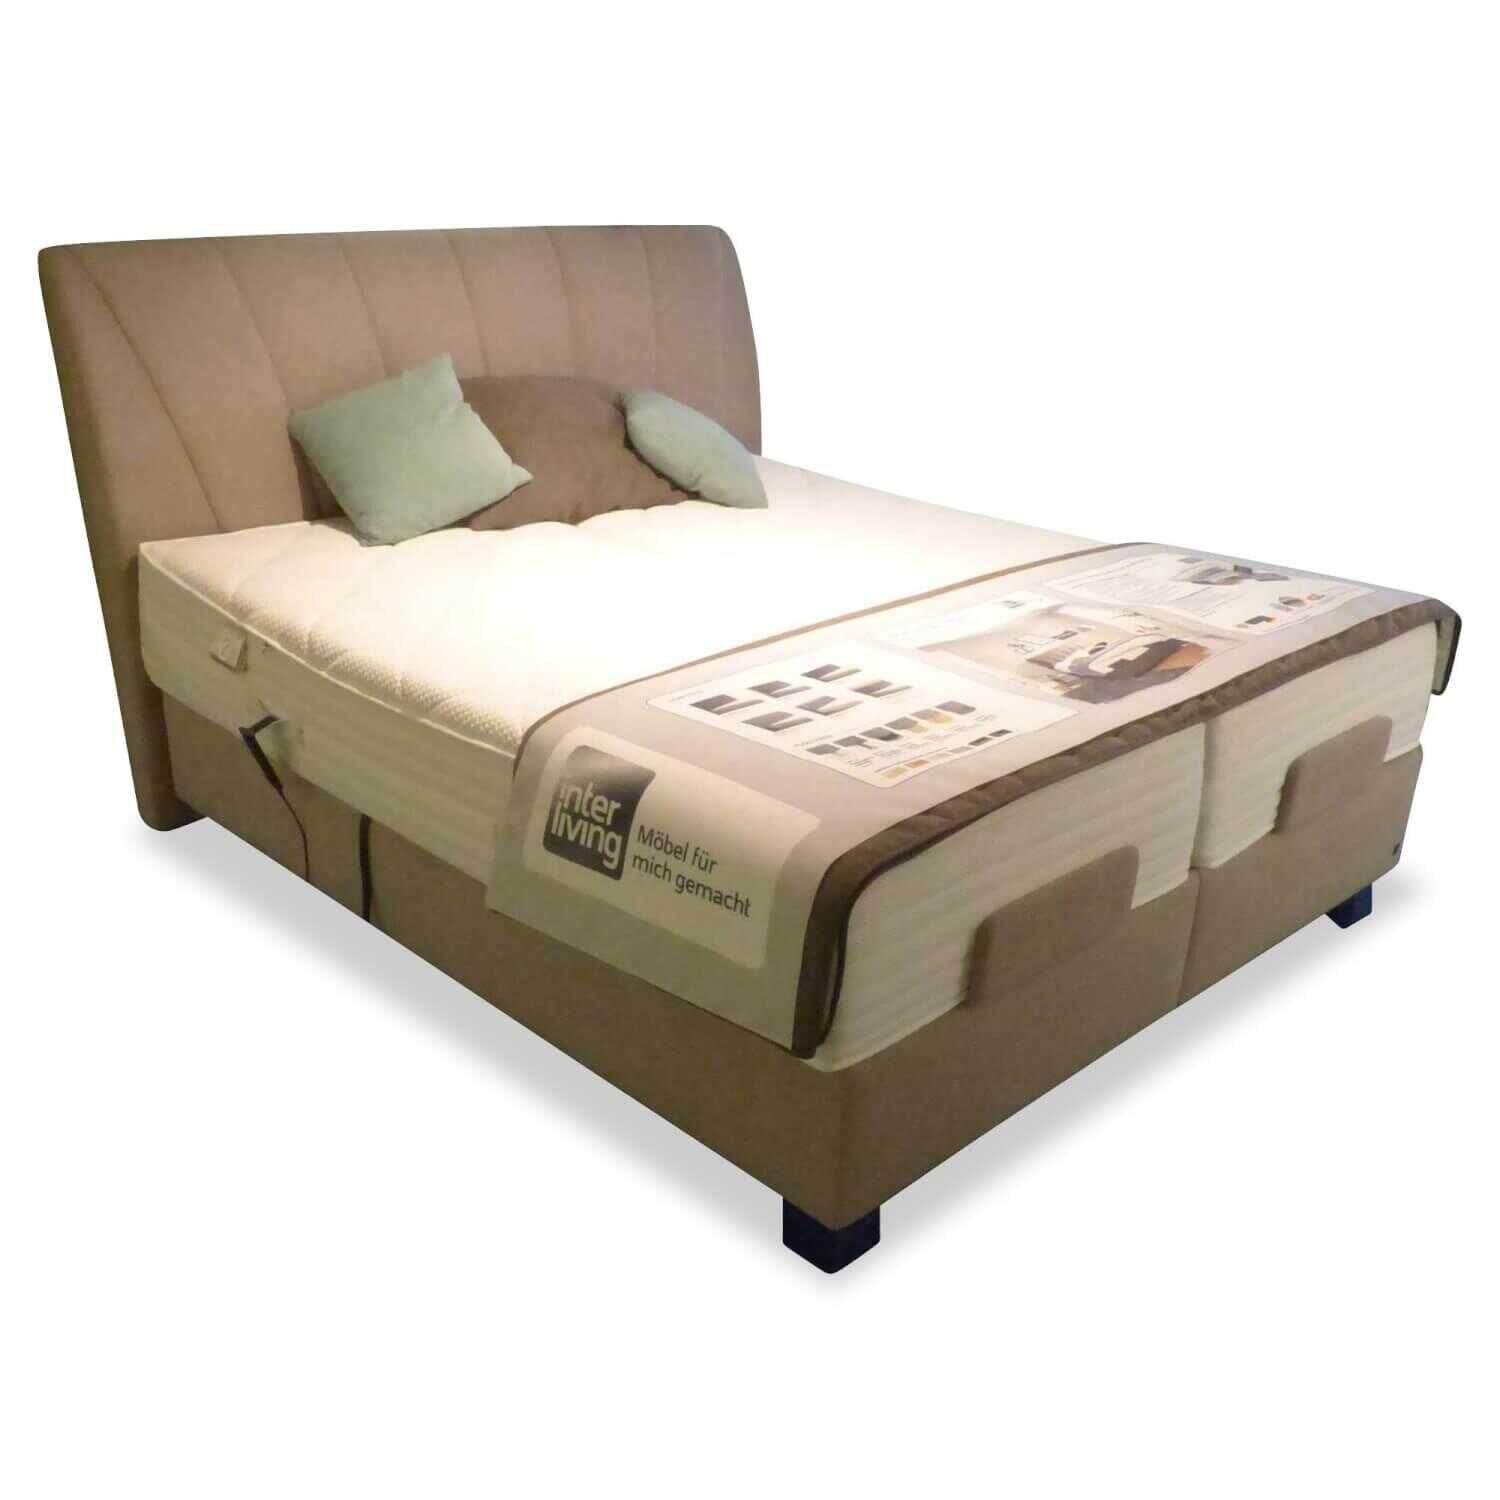 Bett 1405 Stoff Enjoy 3 Taupe Füße Metall Verchromt mit Matratzen, Tagesdecke und Zierkissen